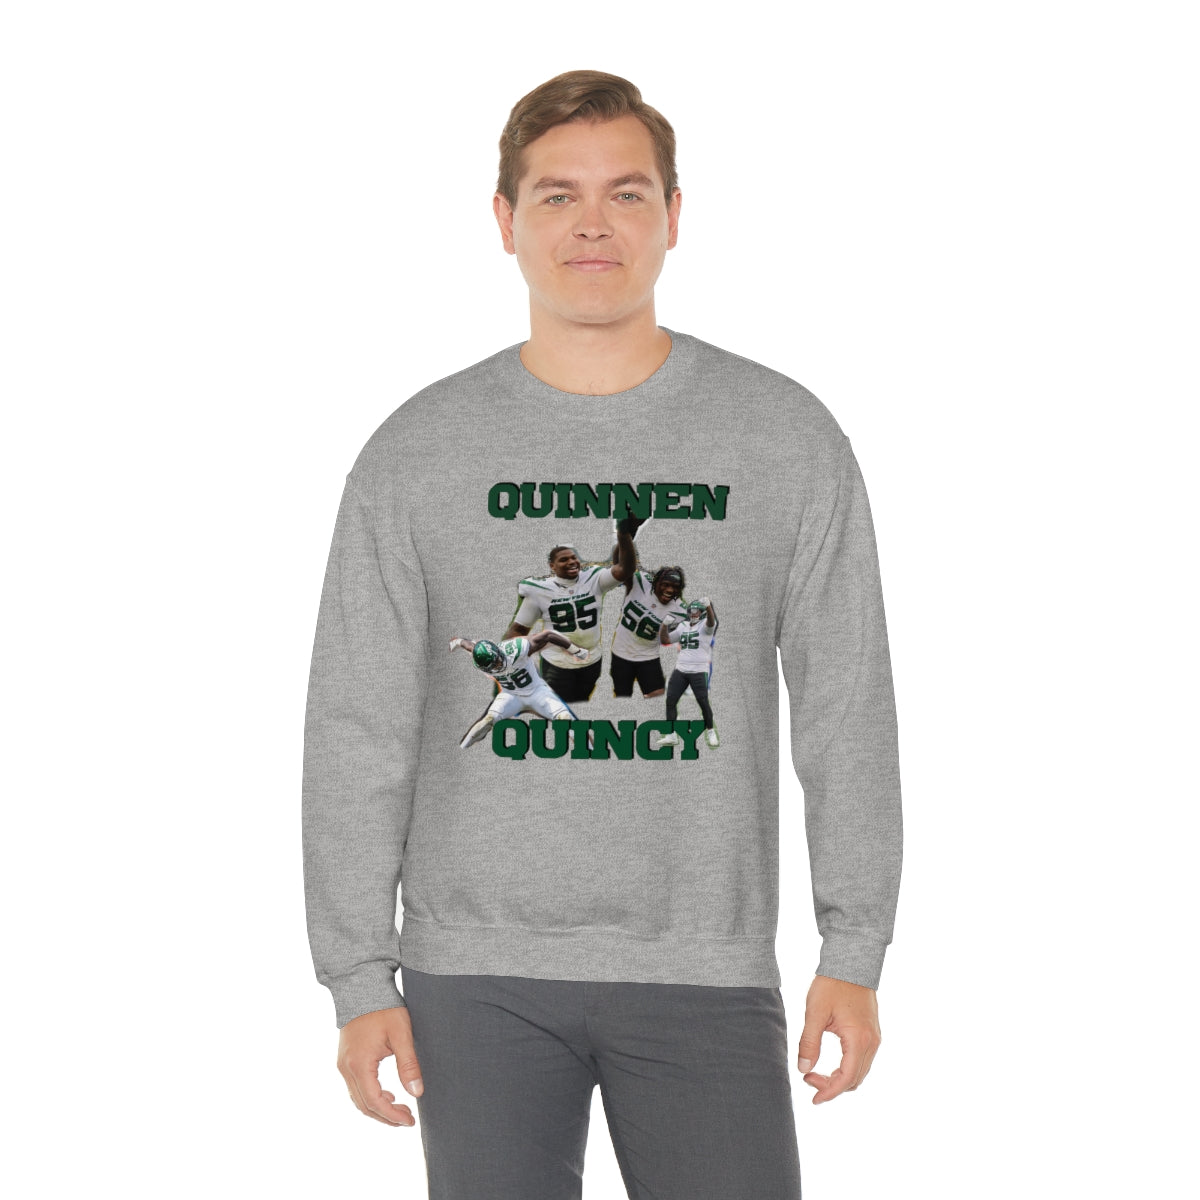 Quinnen And Quincy Williams Crewneck Sweatshirt - IsGoodBrand